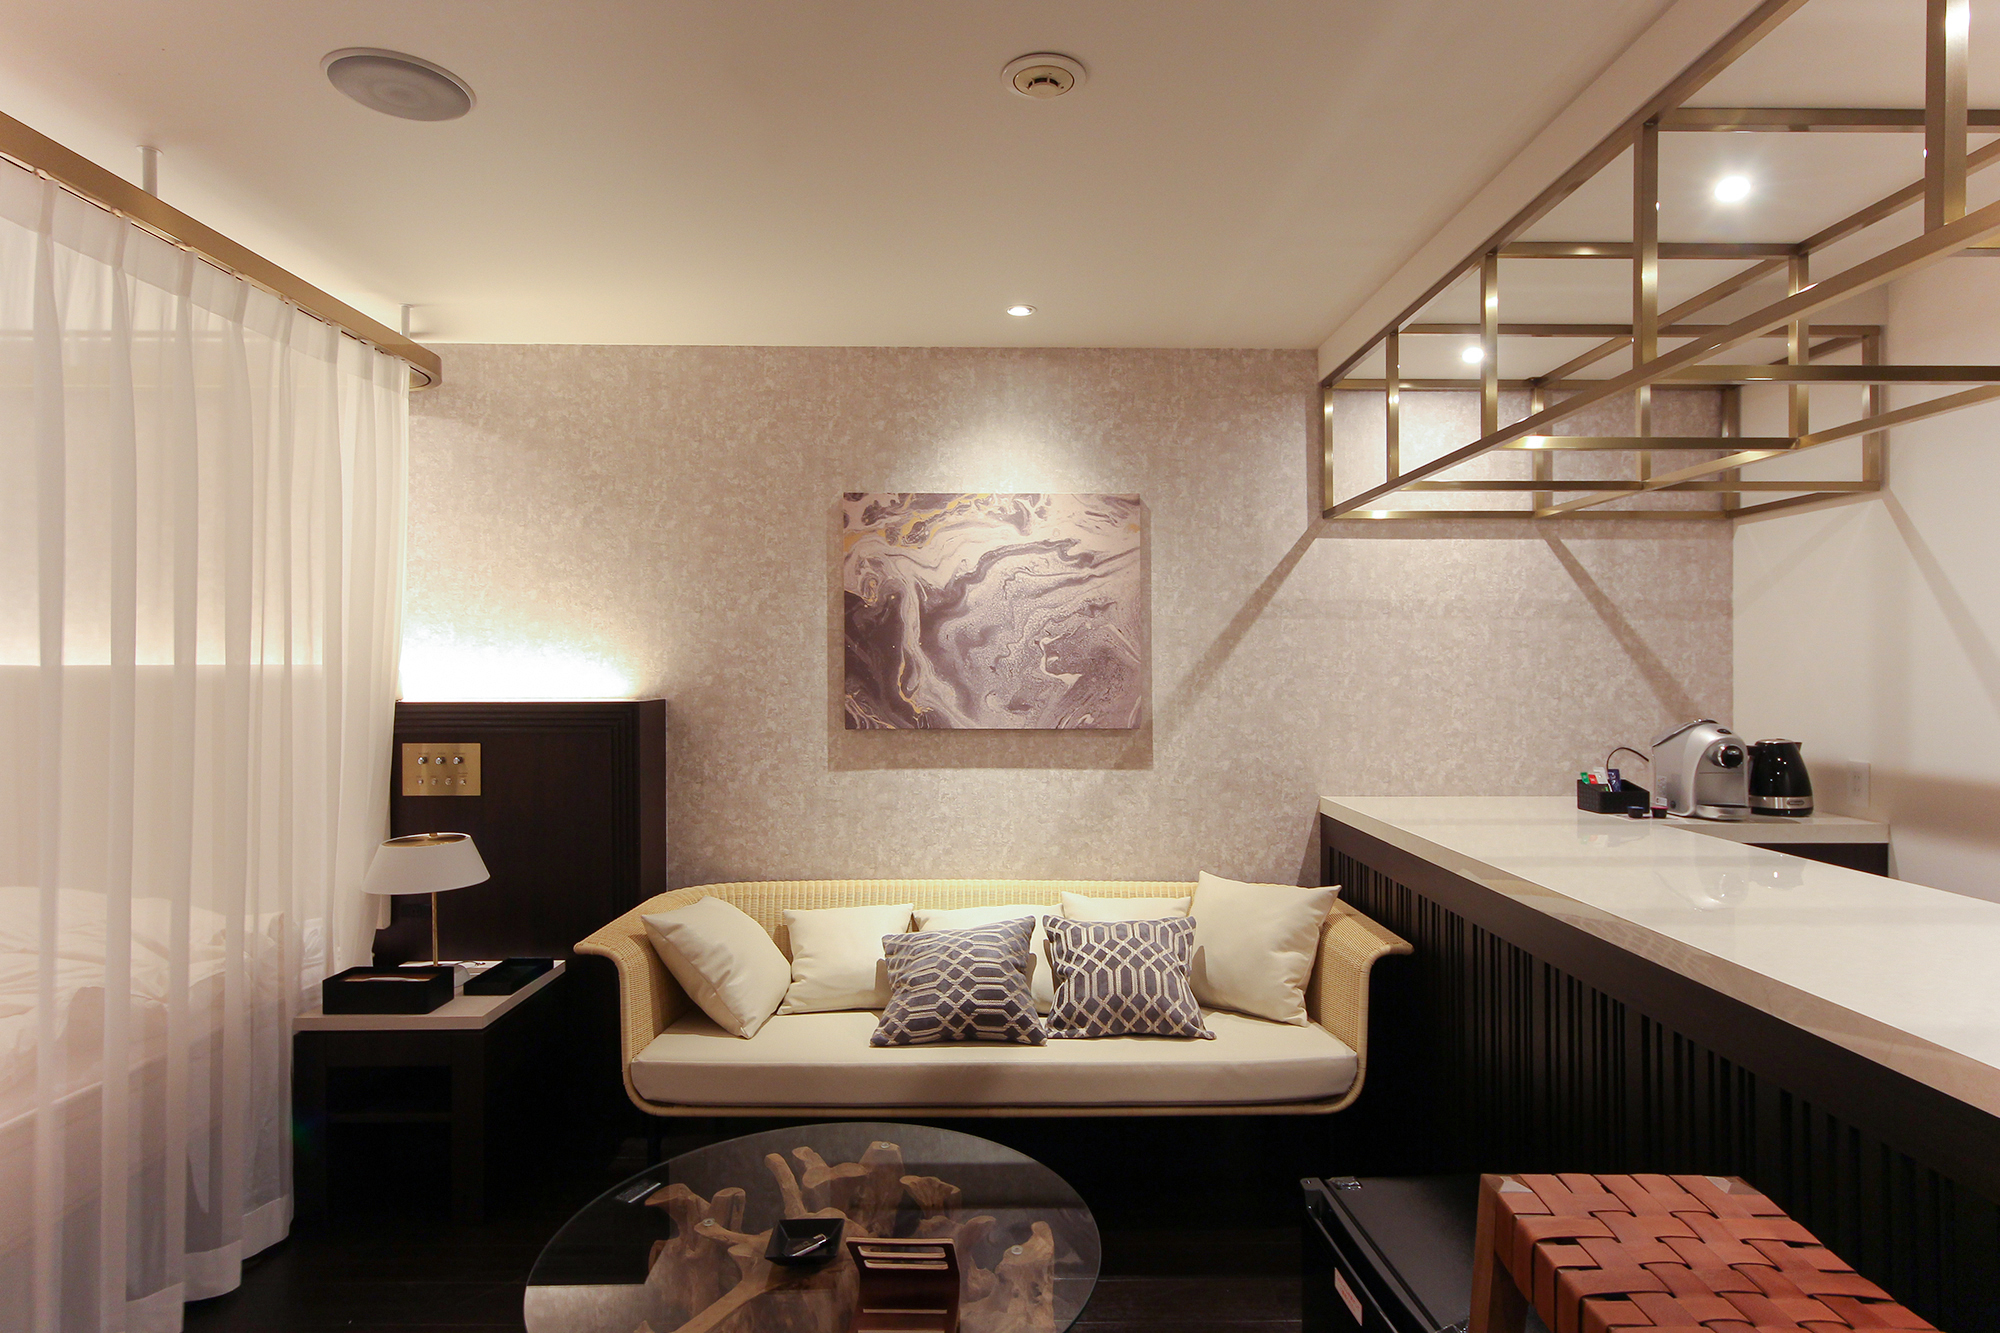 神奈川県相模原市のホテルに展開したマーブル調のアートパネルの施工事例